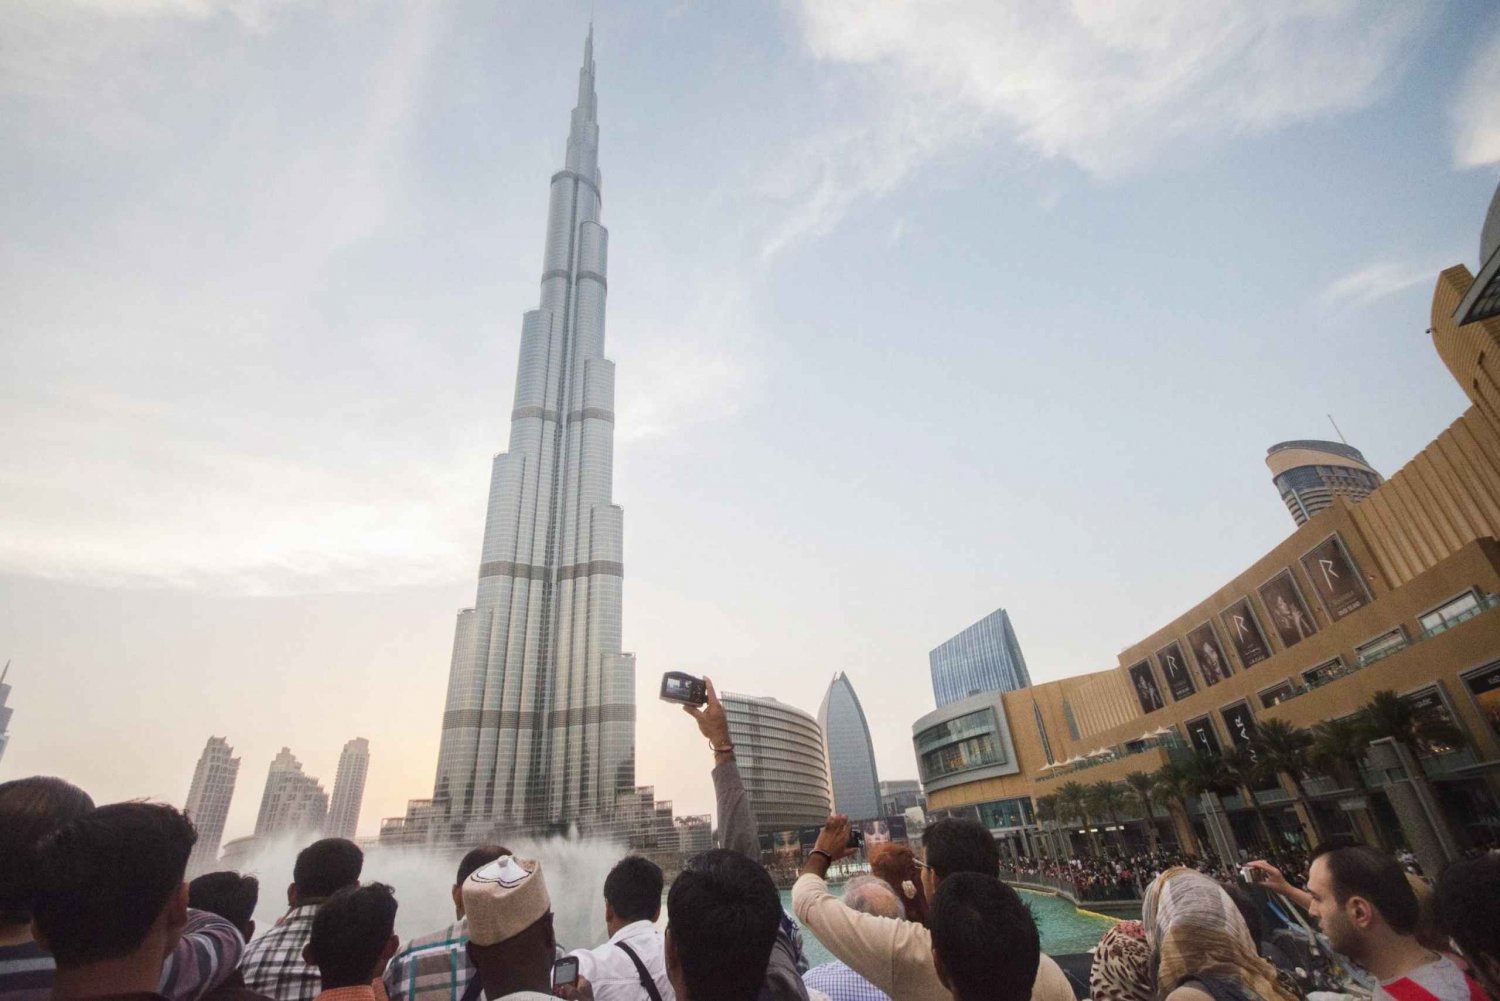 Biljett till Burj Khalifa med 1-vägs transfer